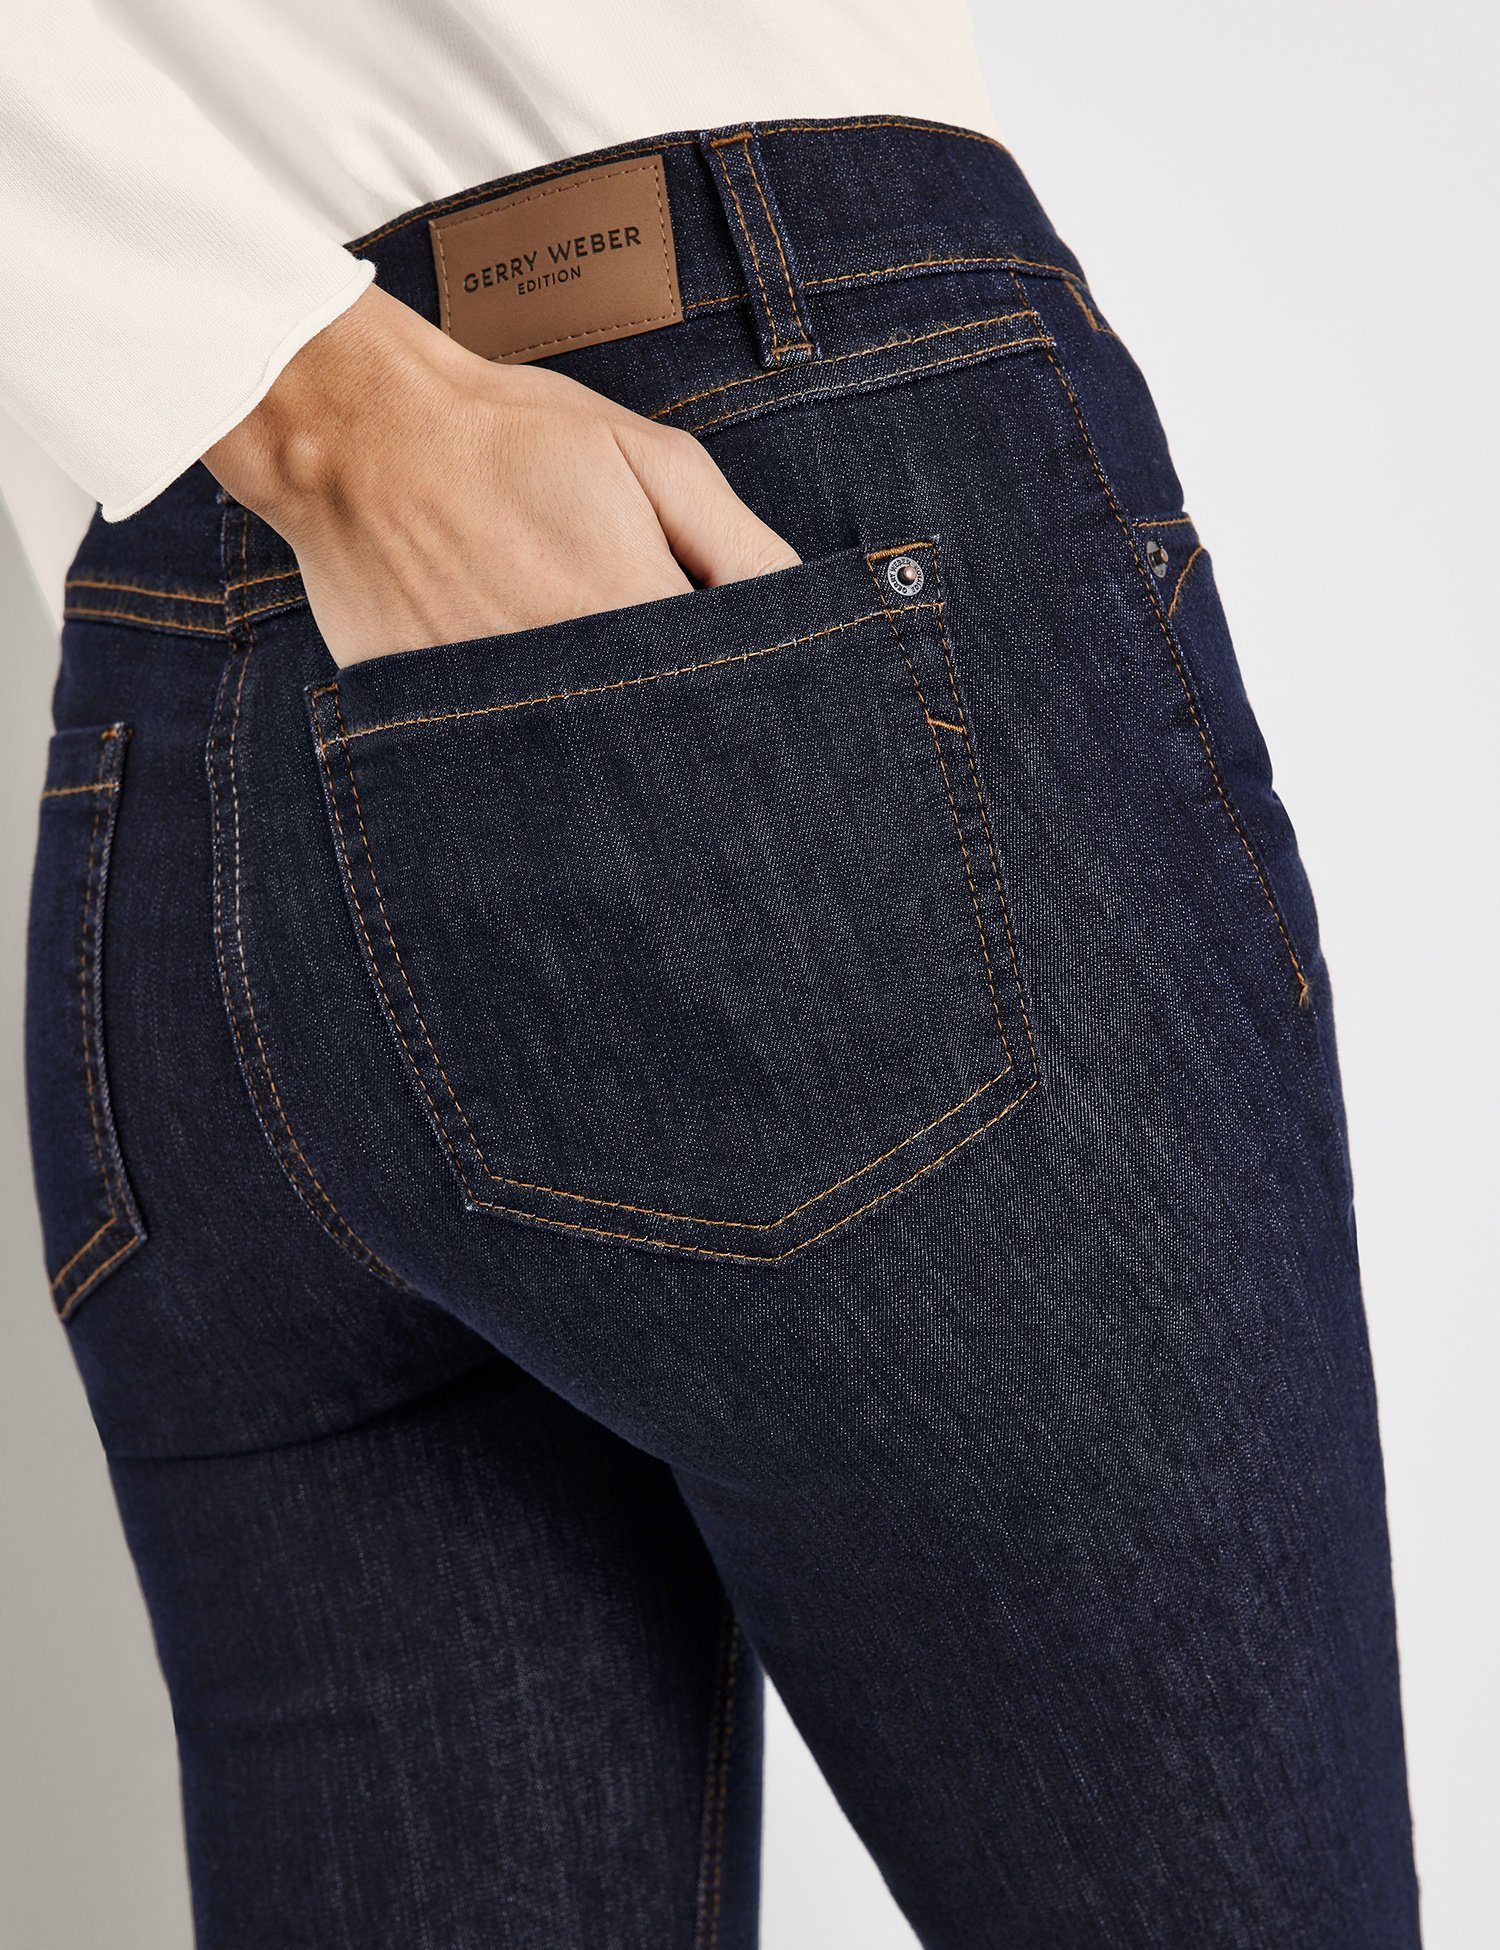 Hose WEBER denim GERRY dark Regular-fit-Jeans Jeans